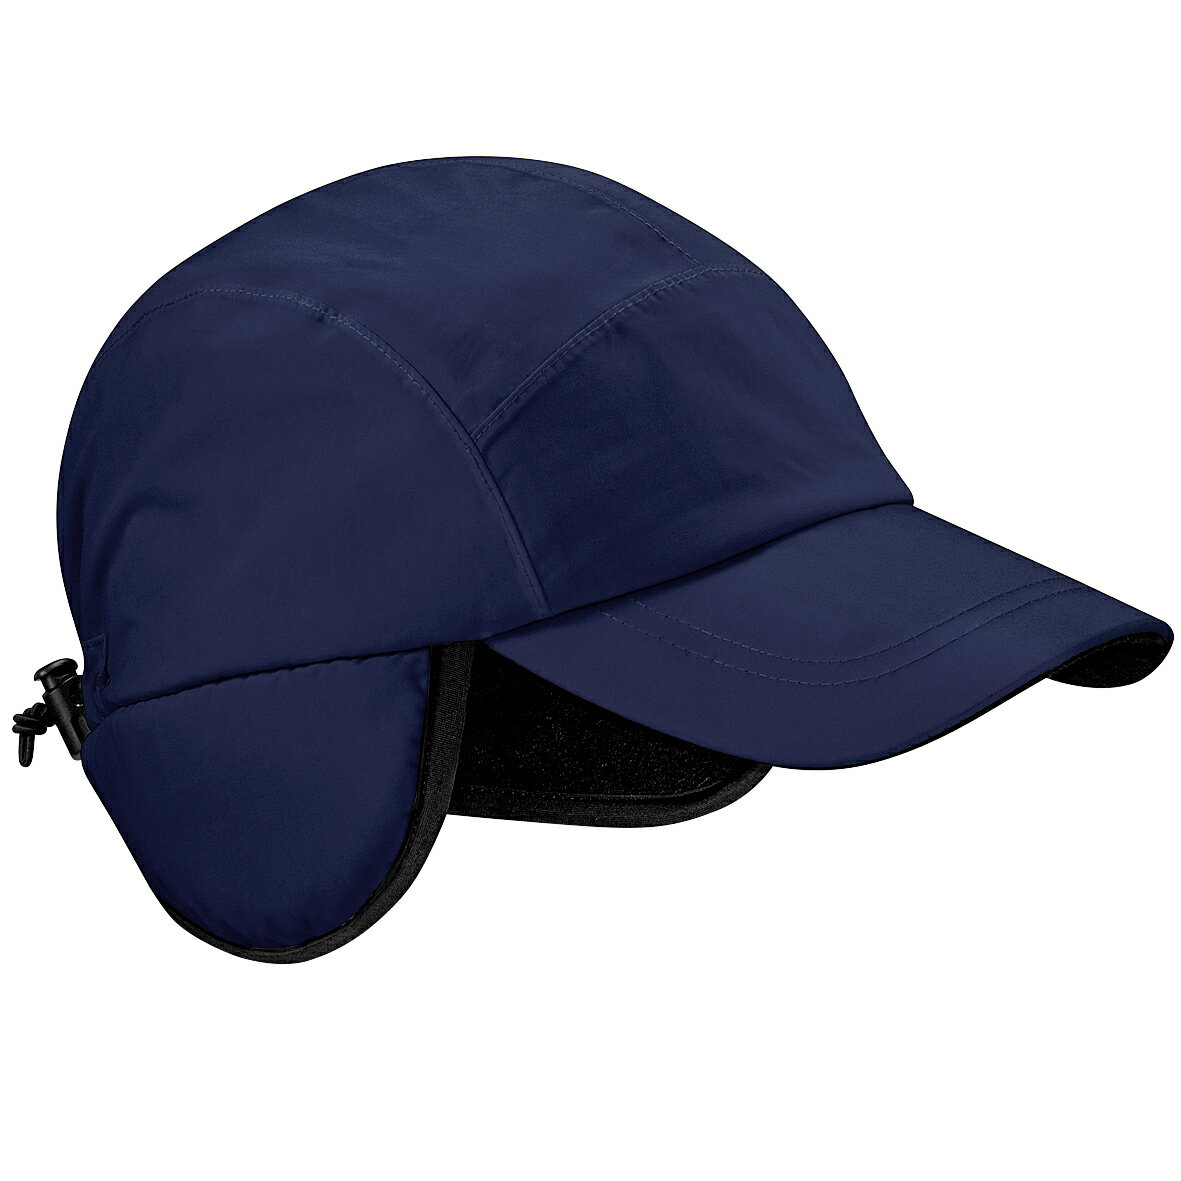 (ビーチフィールド) Beechfield 防水・透湿 アーミーキャップ 帽子 